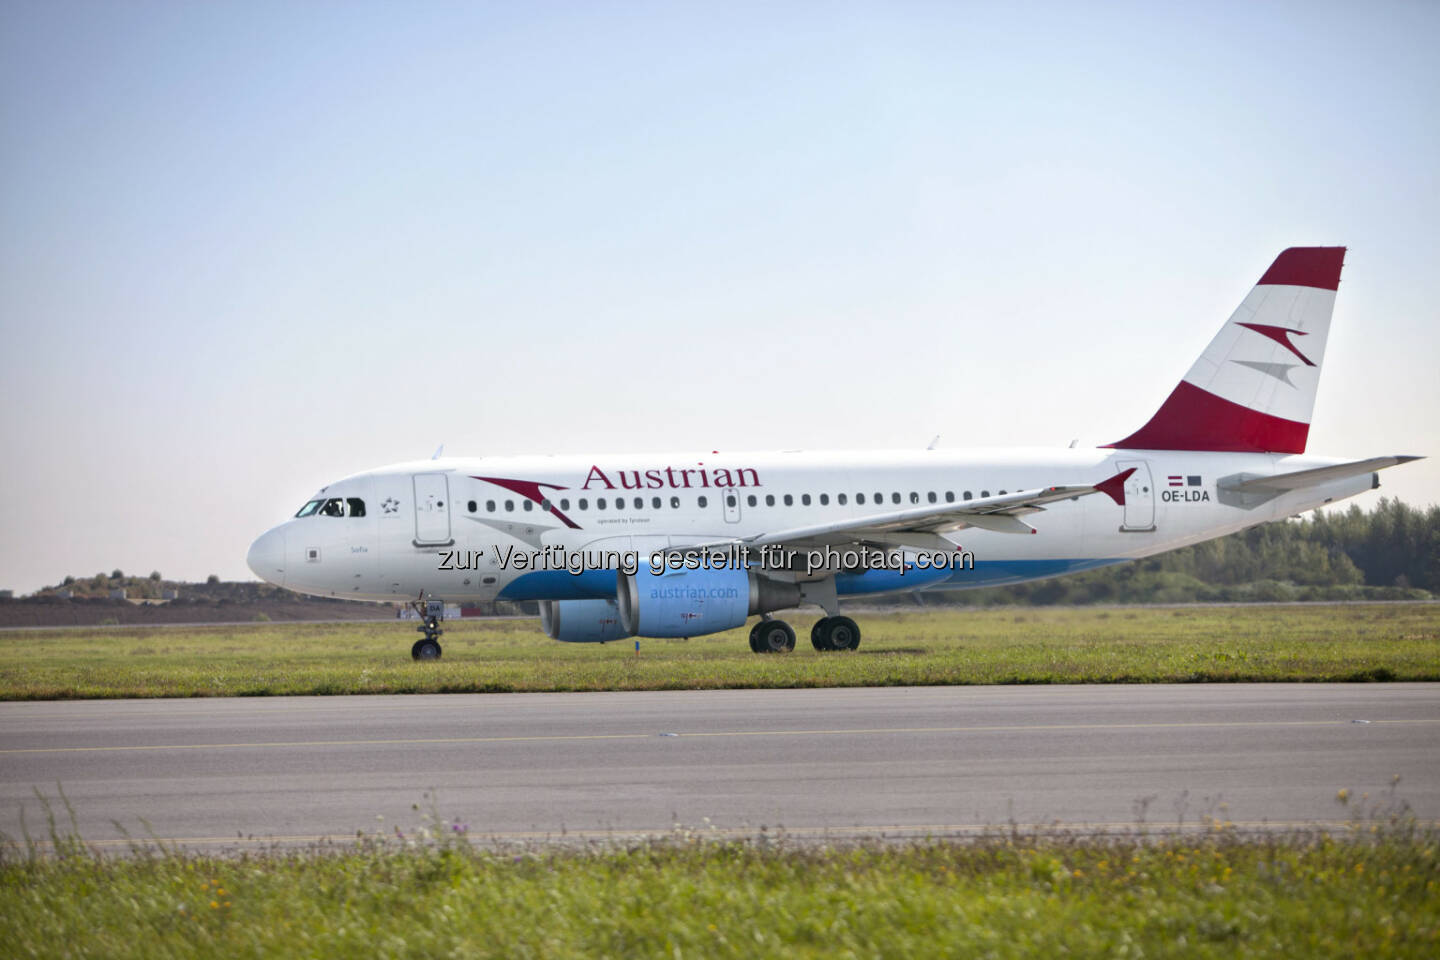 Austrian AirbusA319 : Austrian Airlines nimmt Flüge nach Isfahan auf : Andreas Otto: „Nach 30 Jahren neues Luftverkehrsabkommen zwischen Österreich und Iran verhandelt“ : (c) Austrian Airlines – Michele Pauty